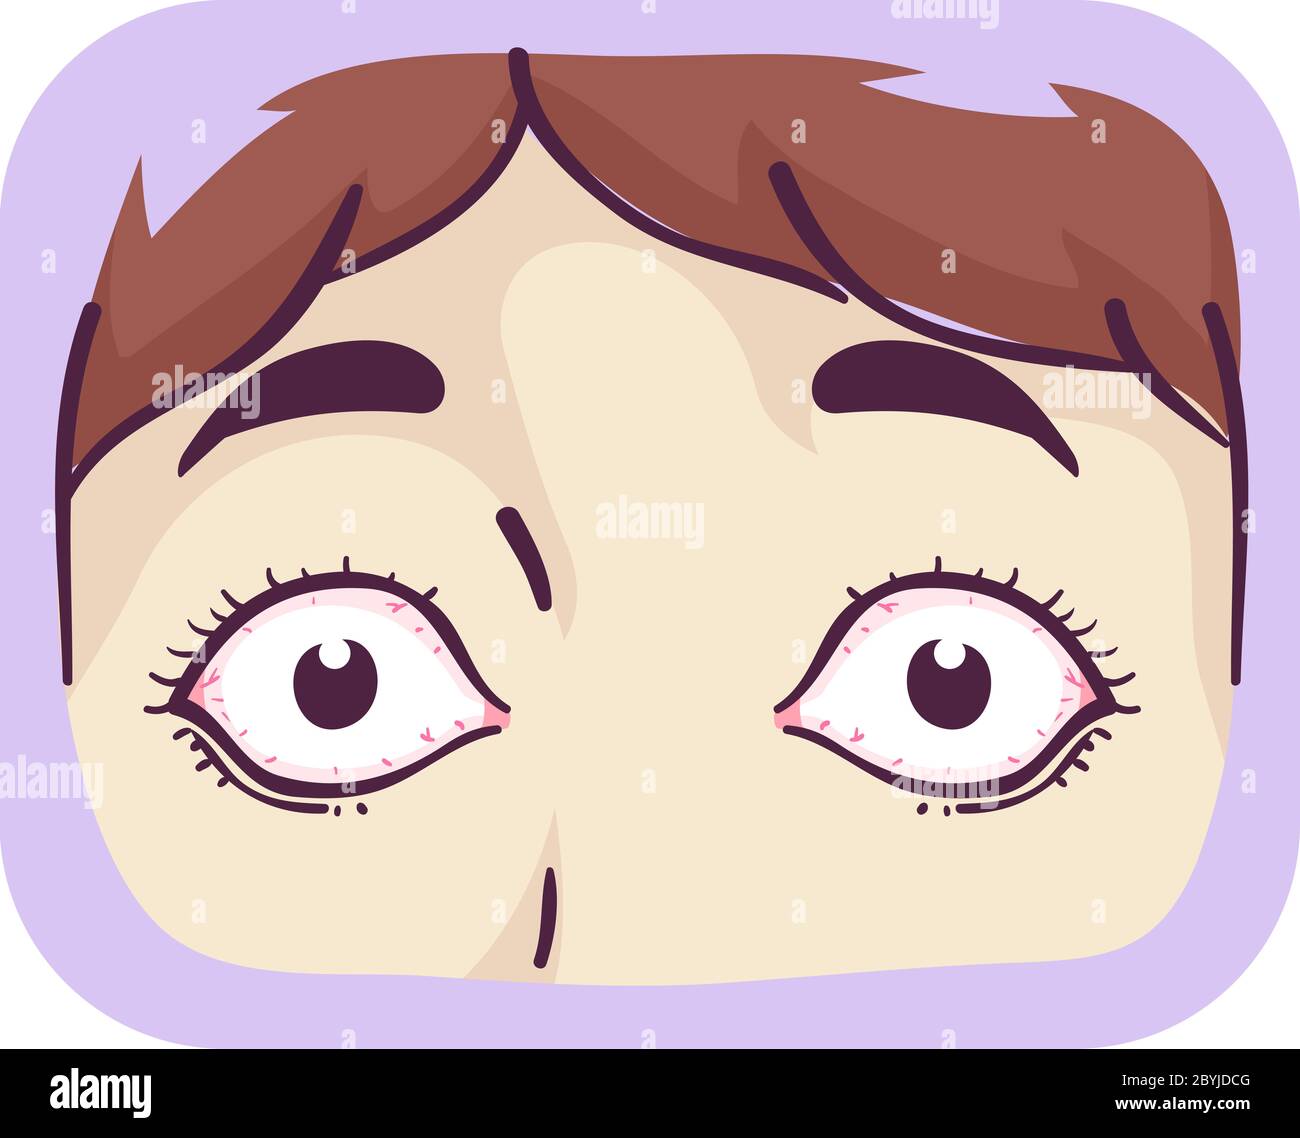 Illustrazione di occhi bulging di una ragazza, sintomo della malattia di Graves Foto Stock